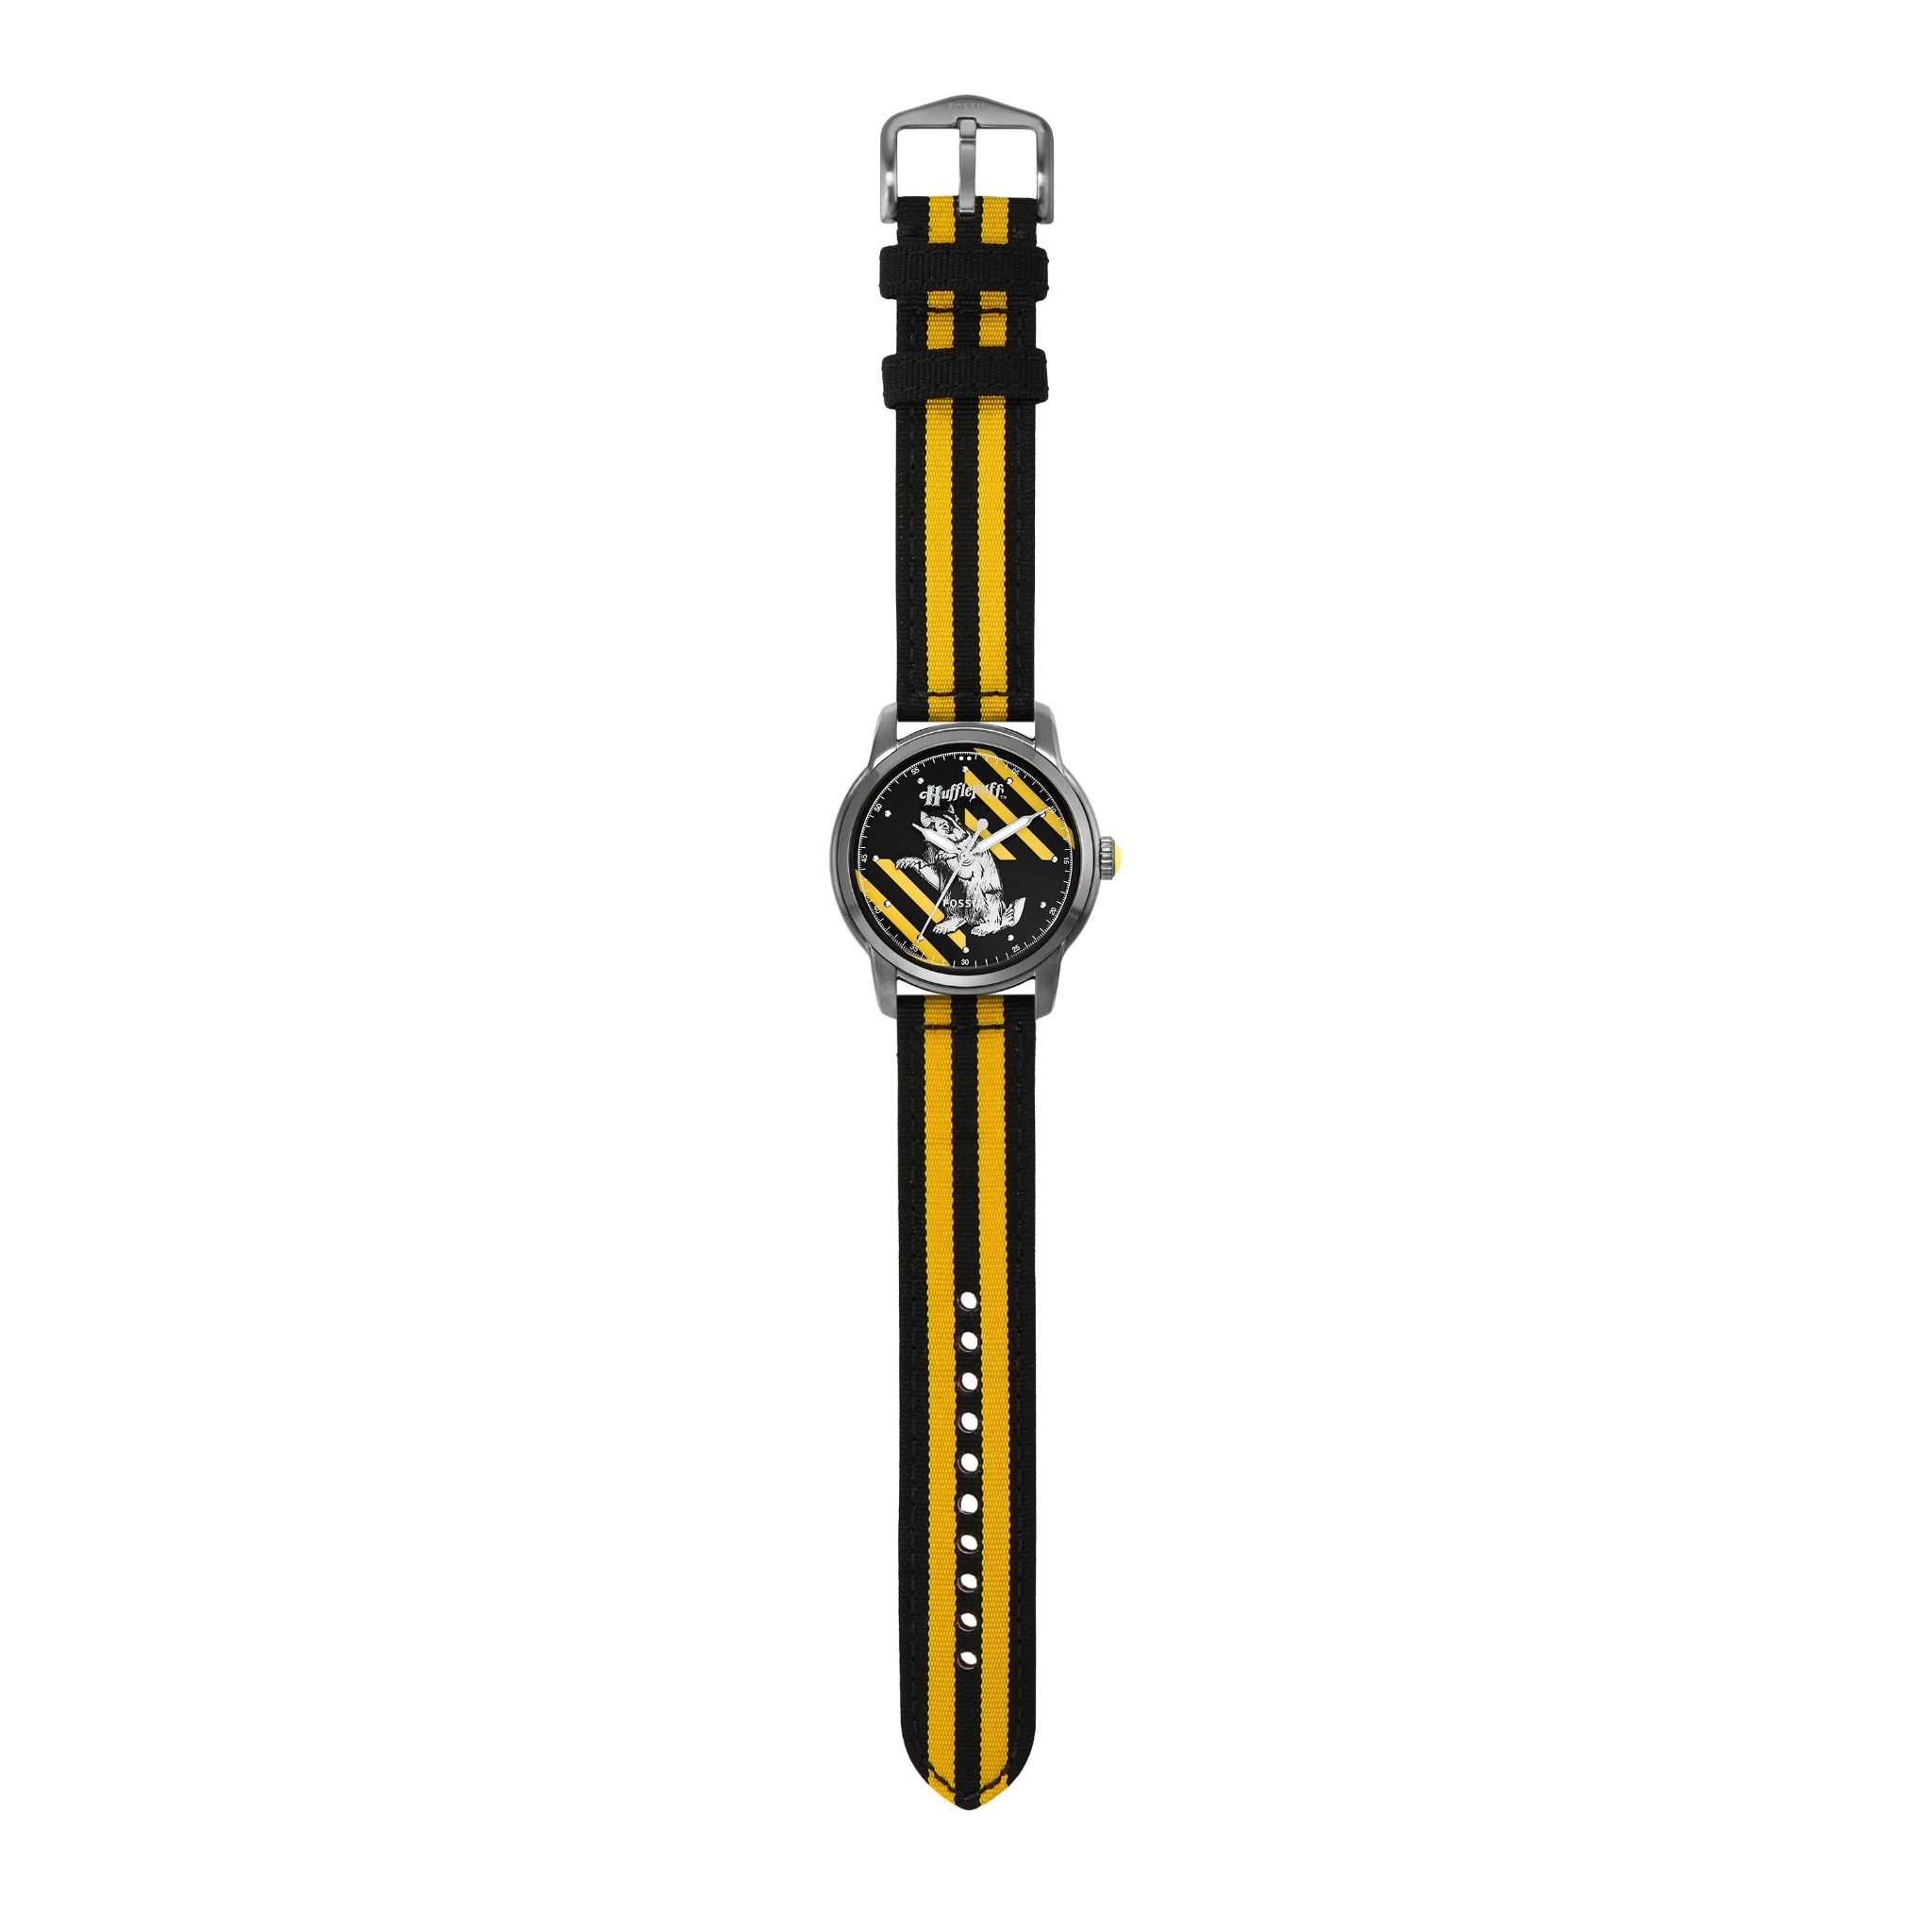  Đồng hồ nam Fossil Heritage HP dây canvas LE1159 - màu vàng 